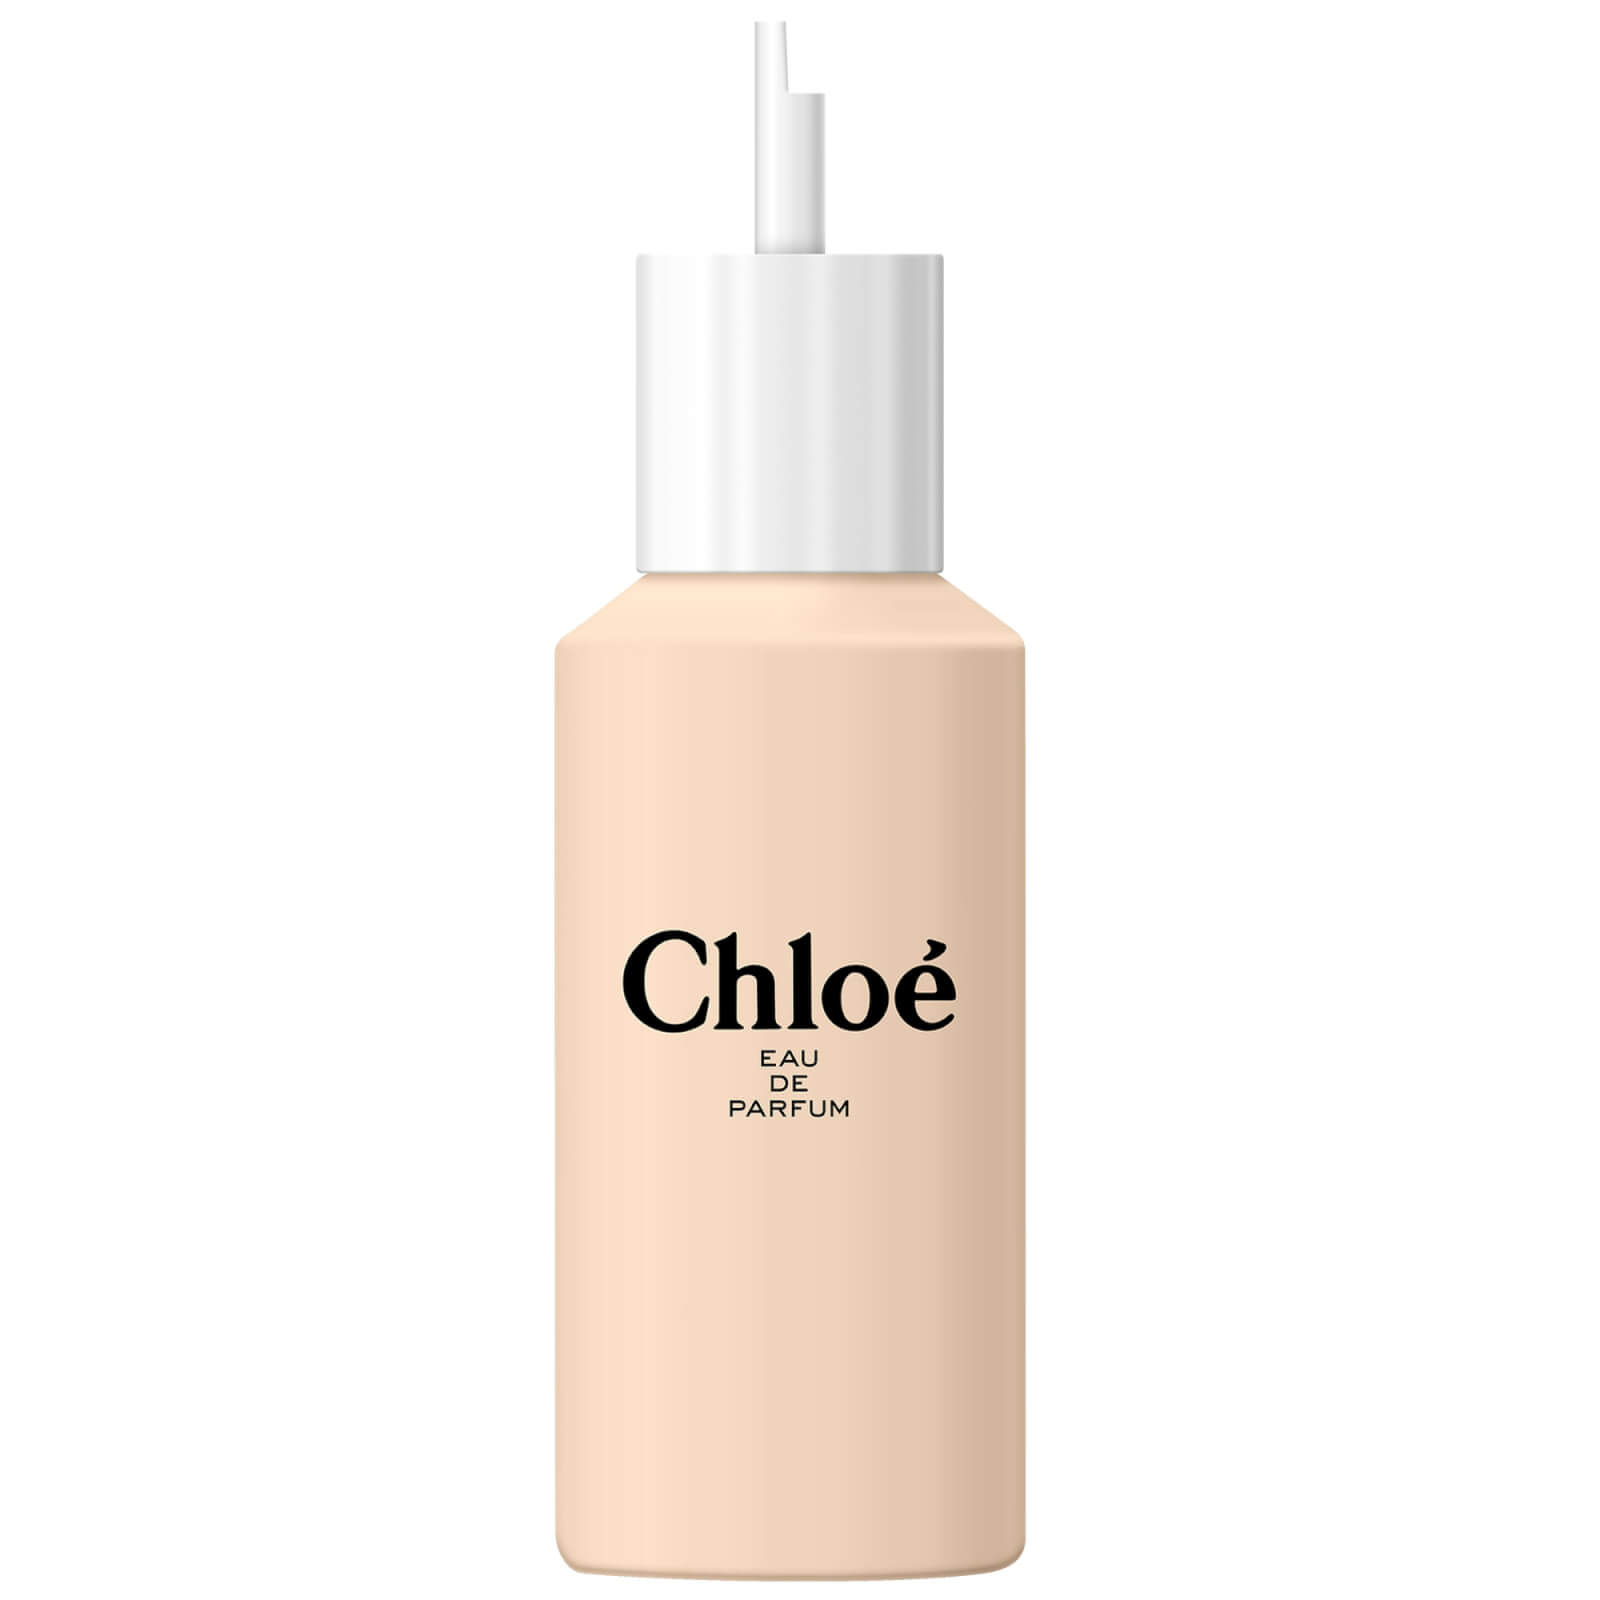 Image of Chloé Eau de Parfum Refill 150ml